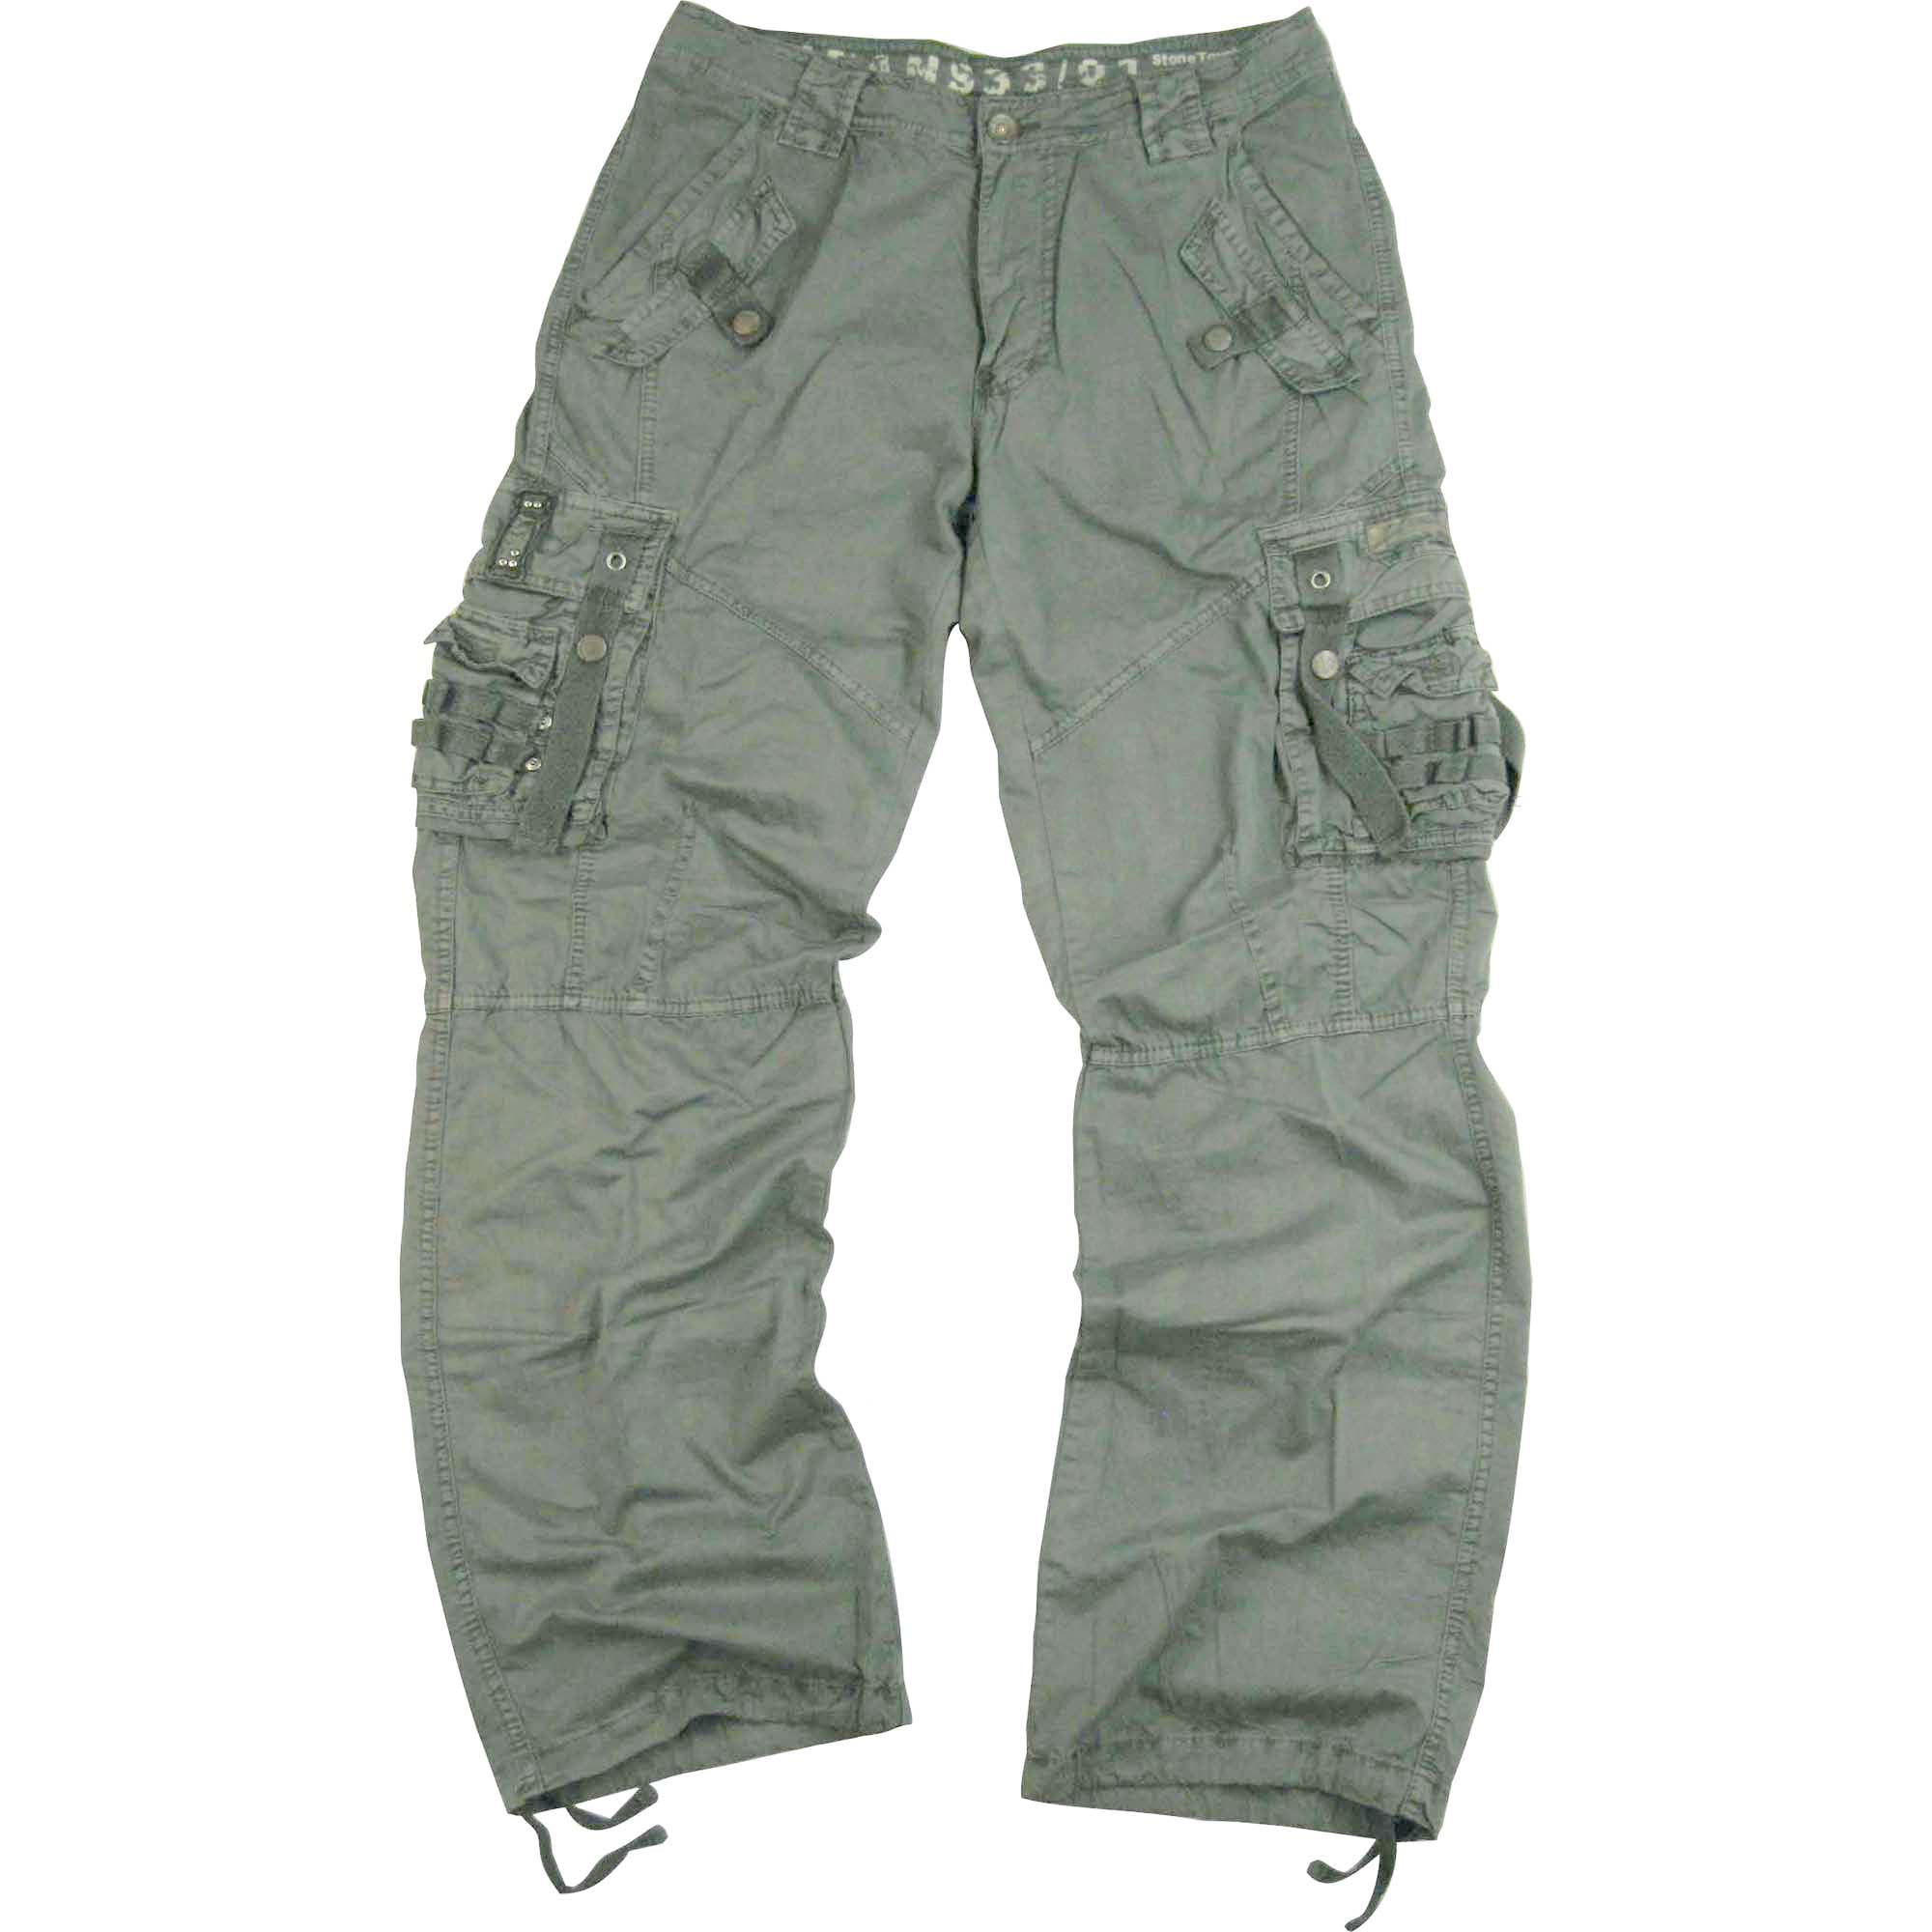 Men's Military Cargo Pants 34x34 L.Grey #12211 - Walmart.com